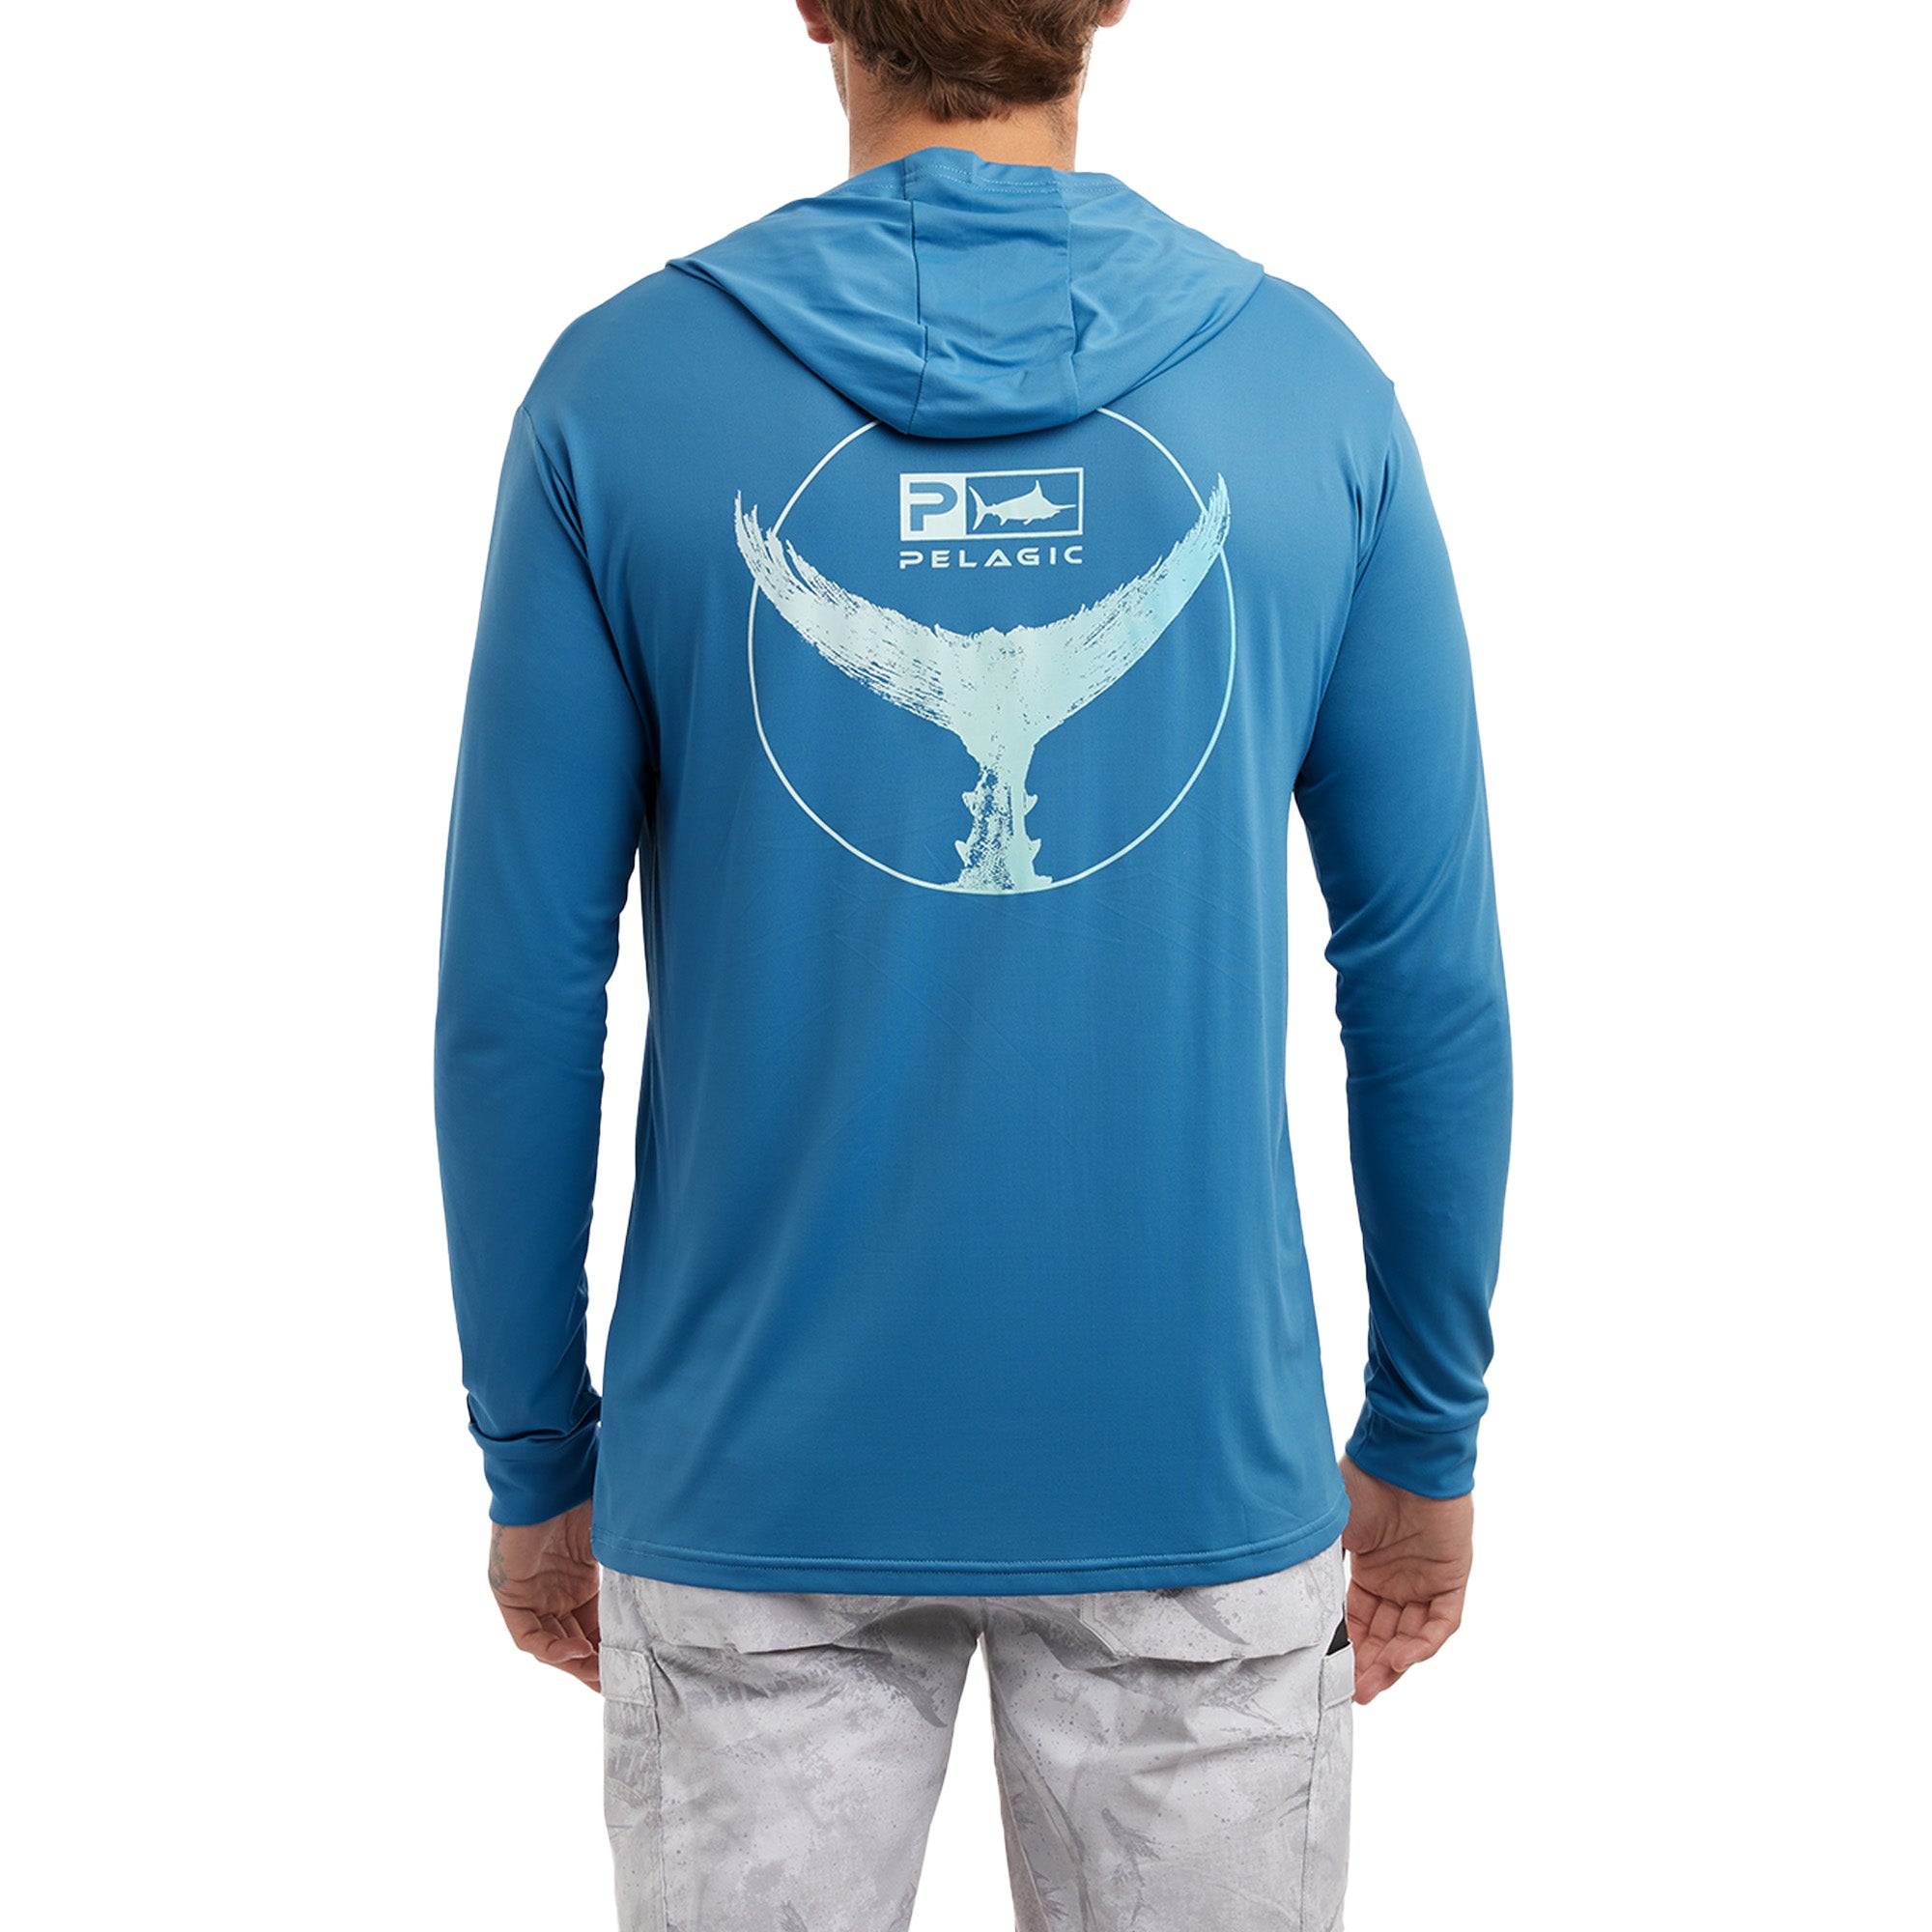 Men's Long Sleeve Hooded Fishing Jersey: Blue/Aqua - fishing shirt – Big  Bite Fishing Shirts